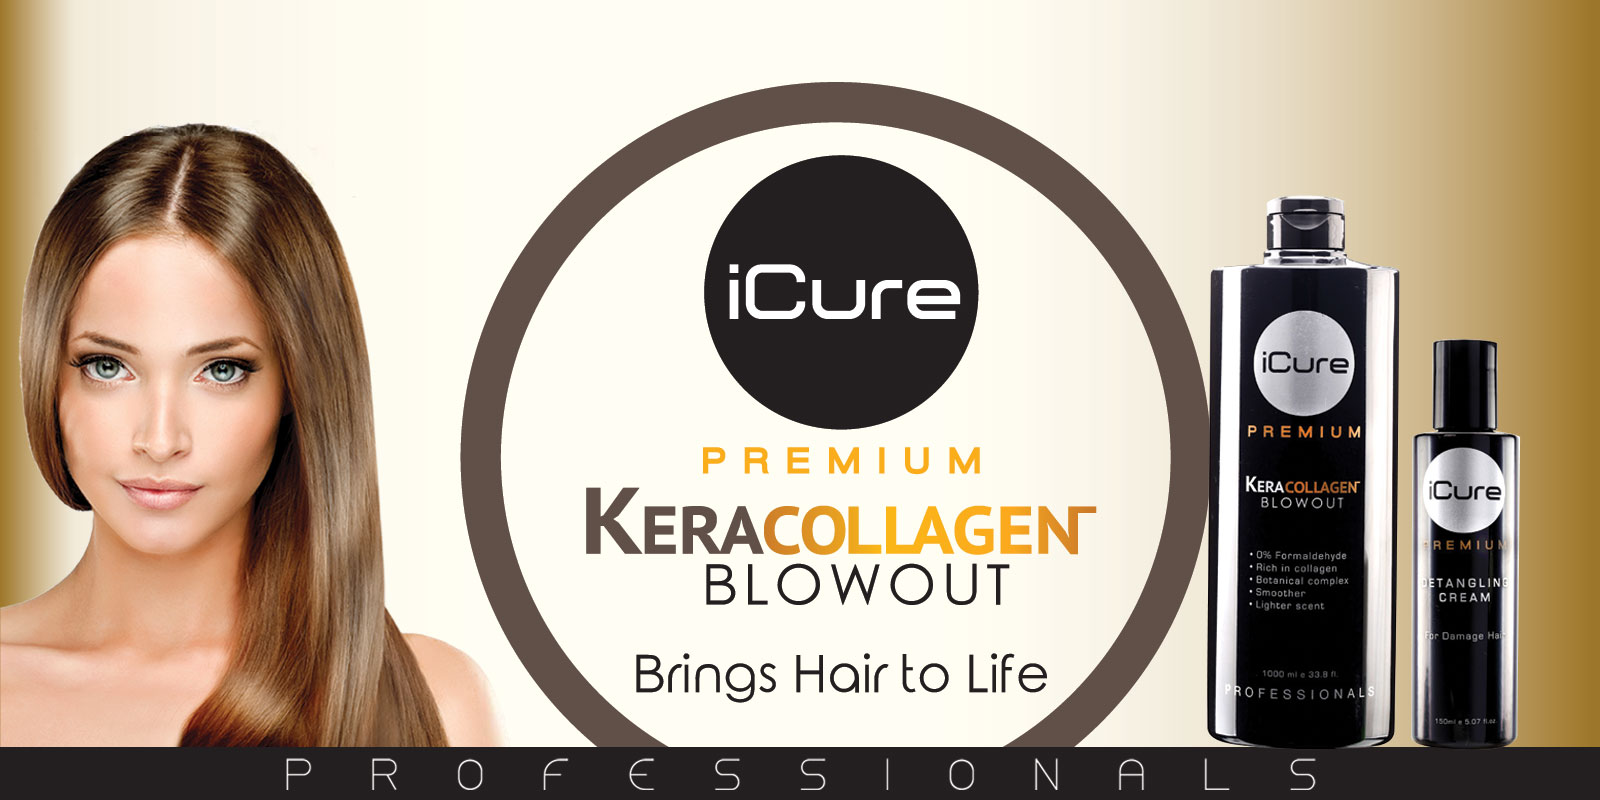 iCure Premium Kera Collagen Blowout